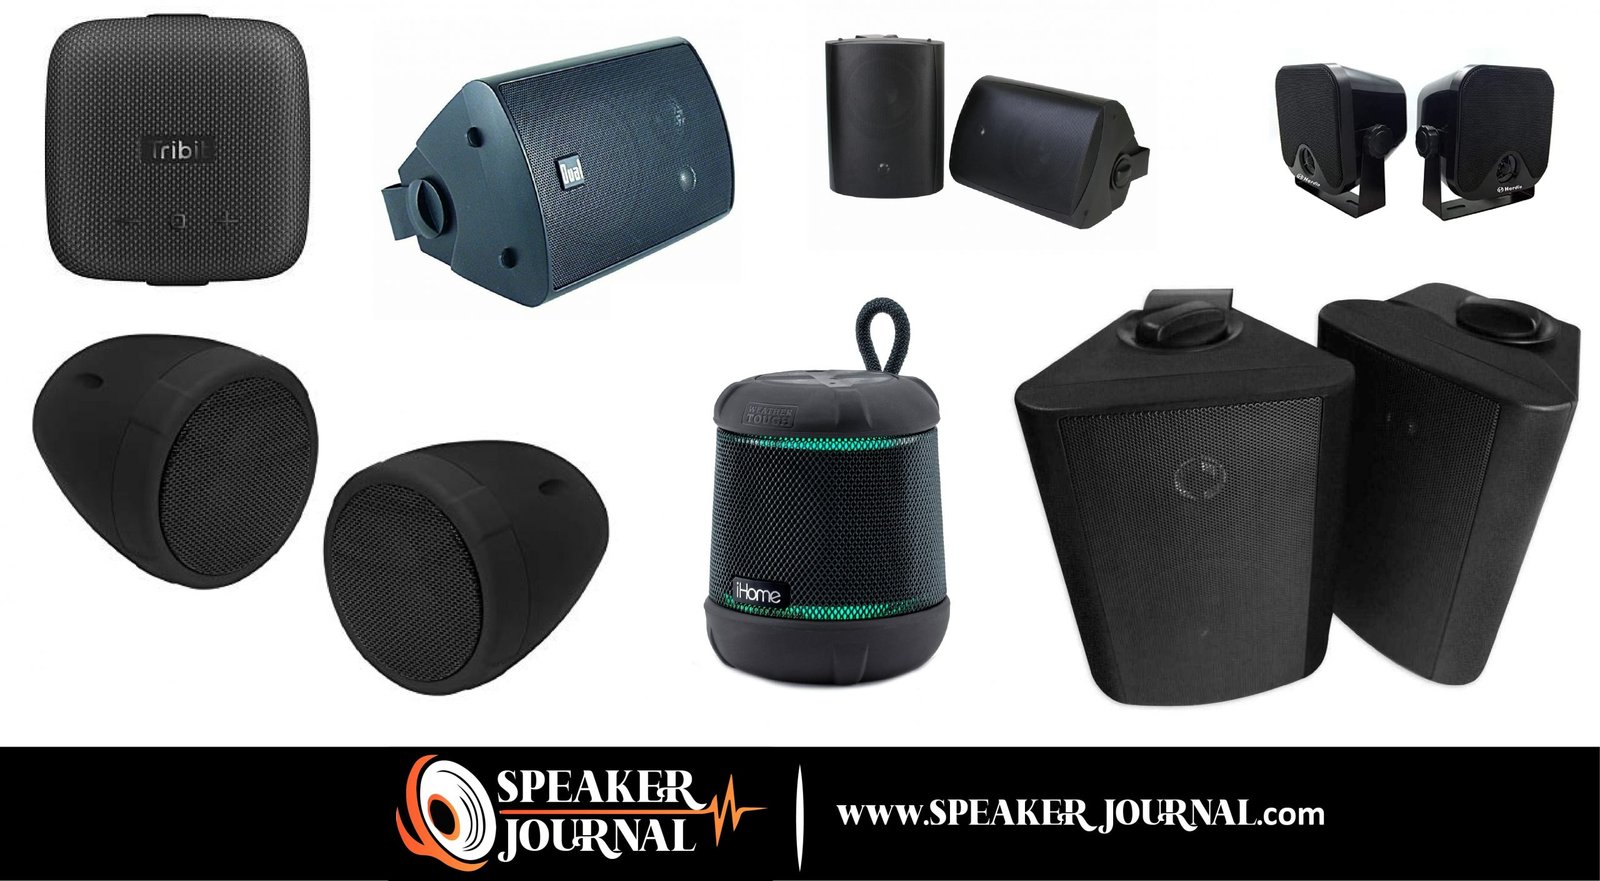 How To Weatherproof Speakers? by speakerjournal.com